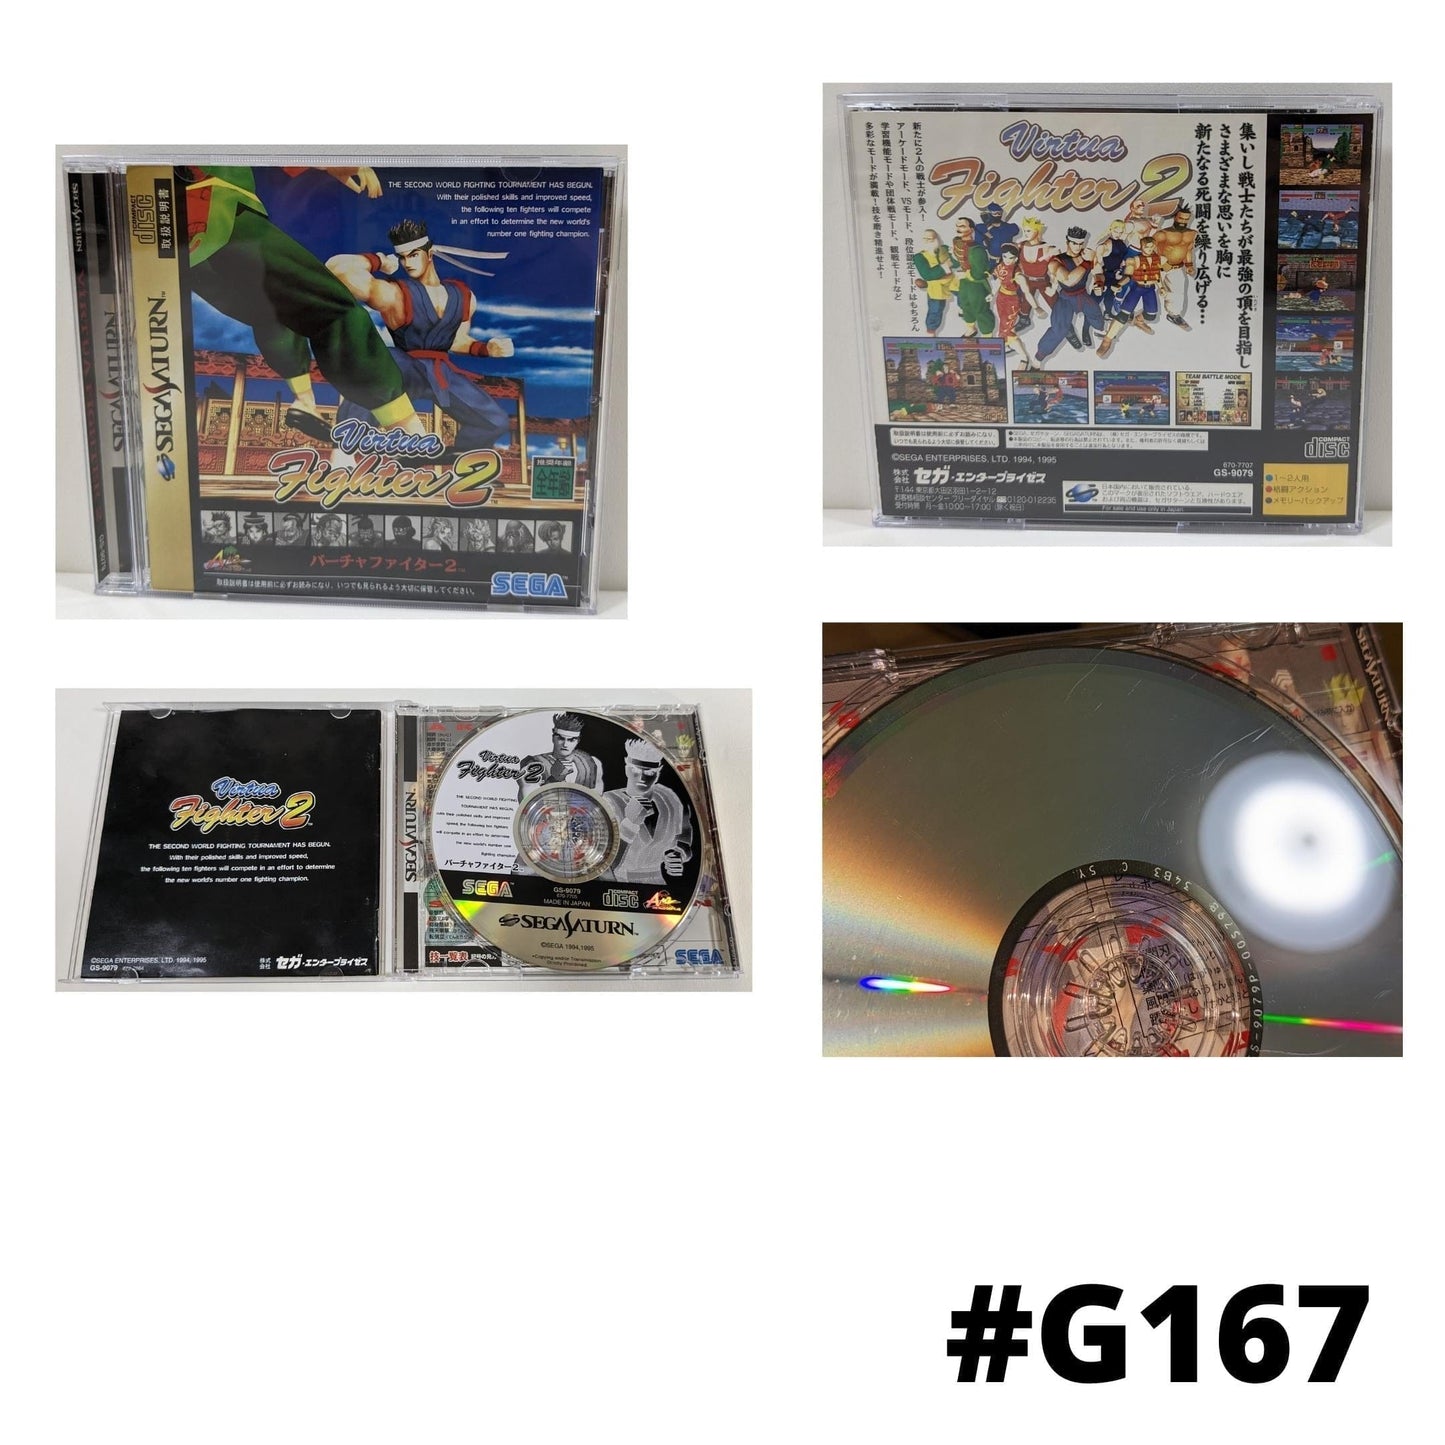 Virtual Fighter 2 | Sega Saturn | Japanese ChitoroShop